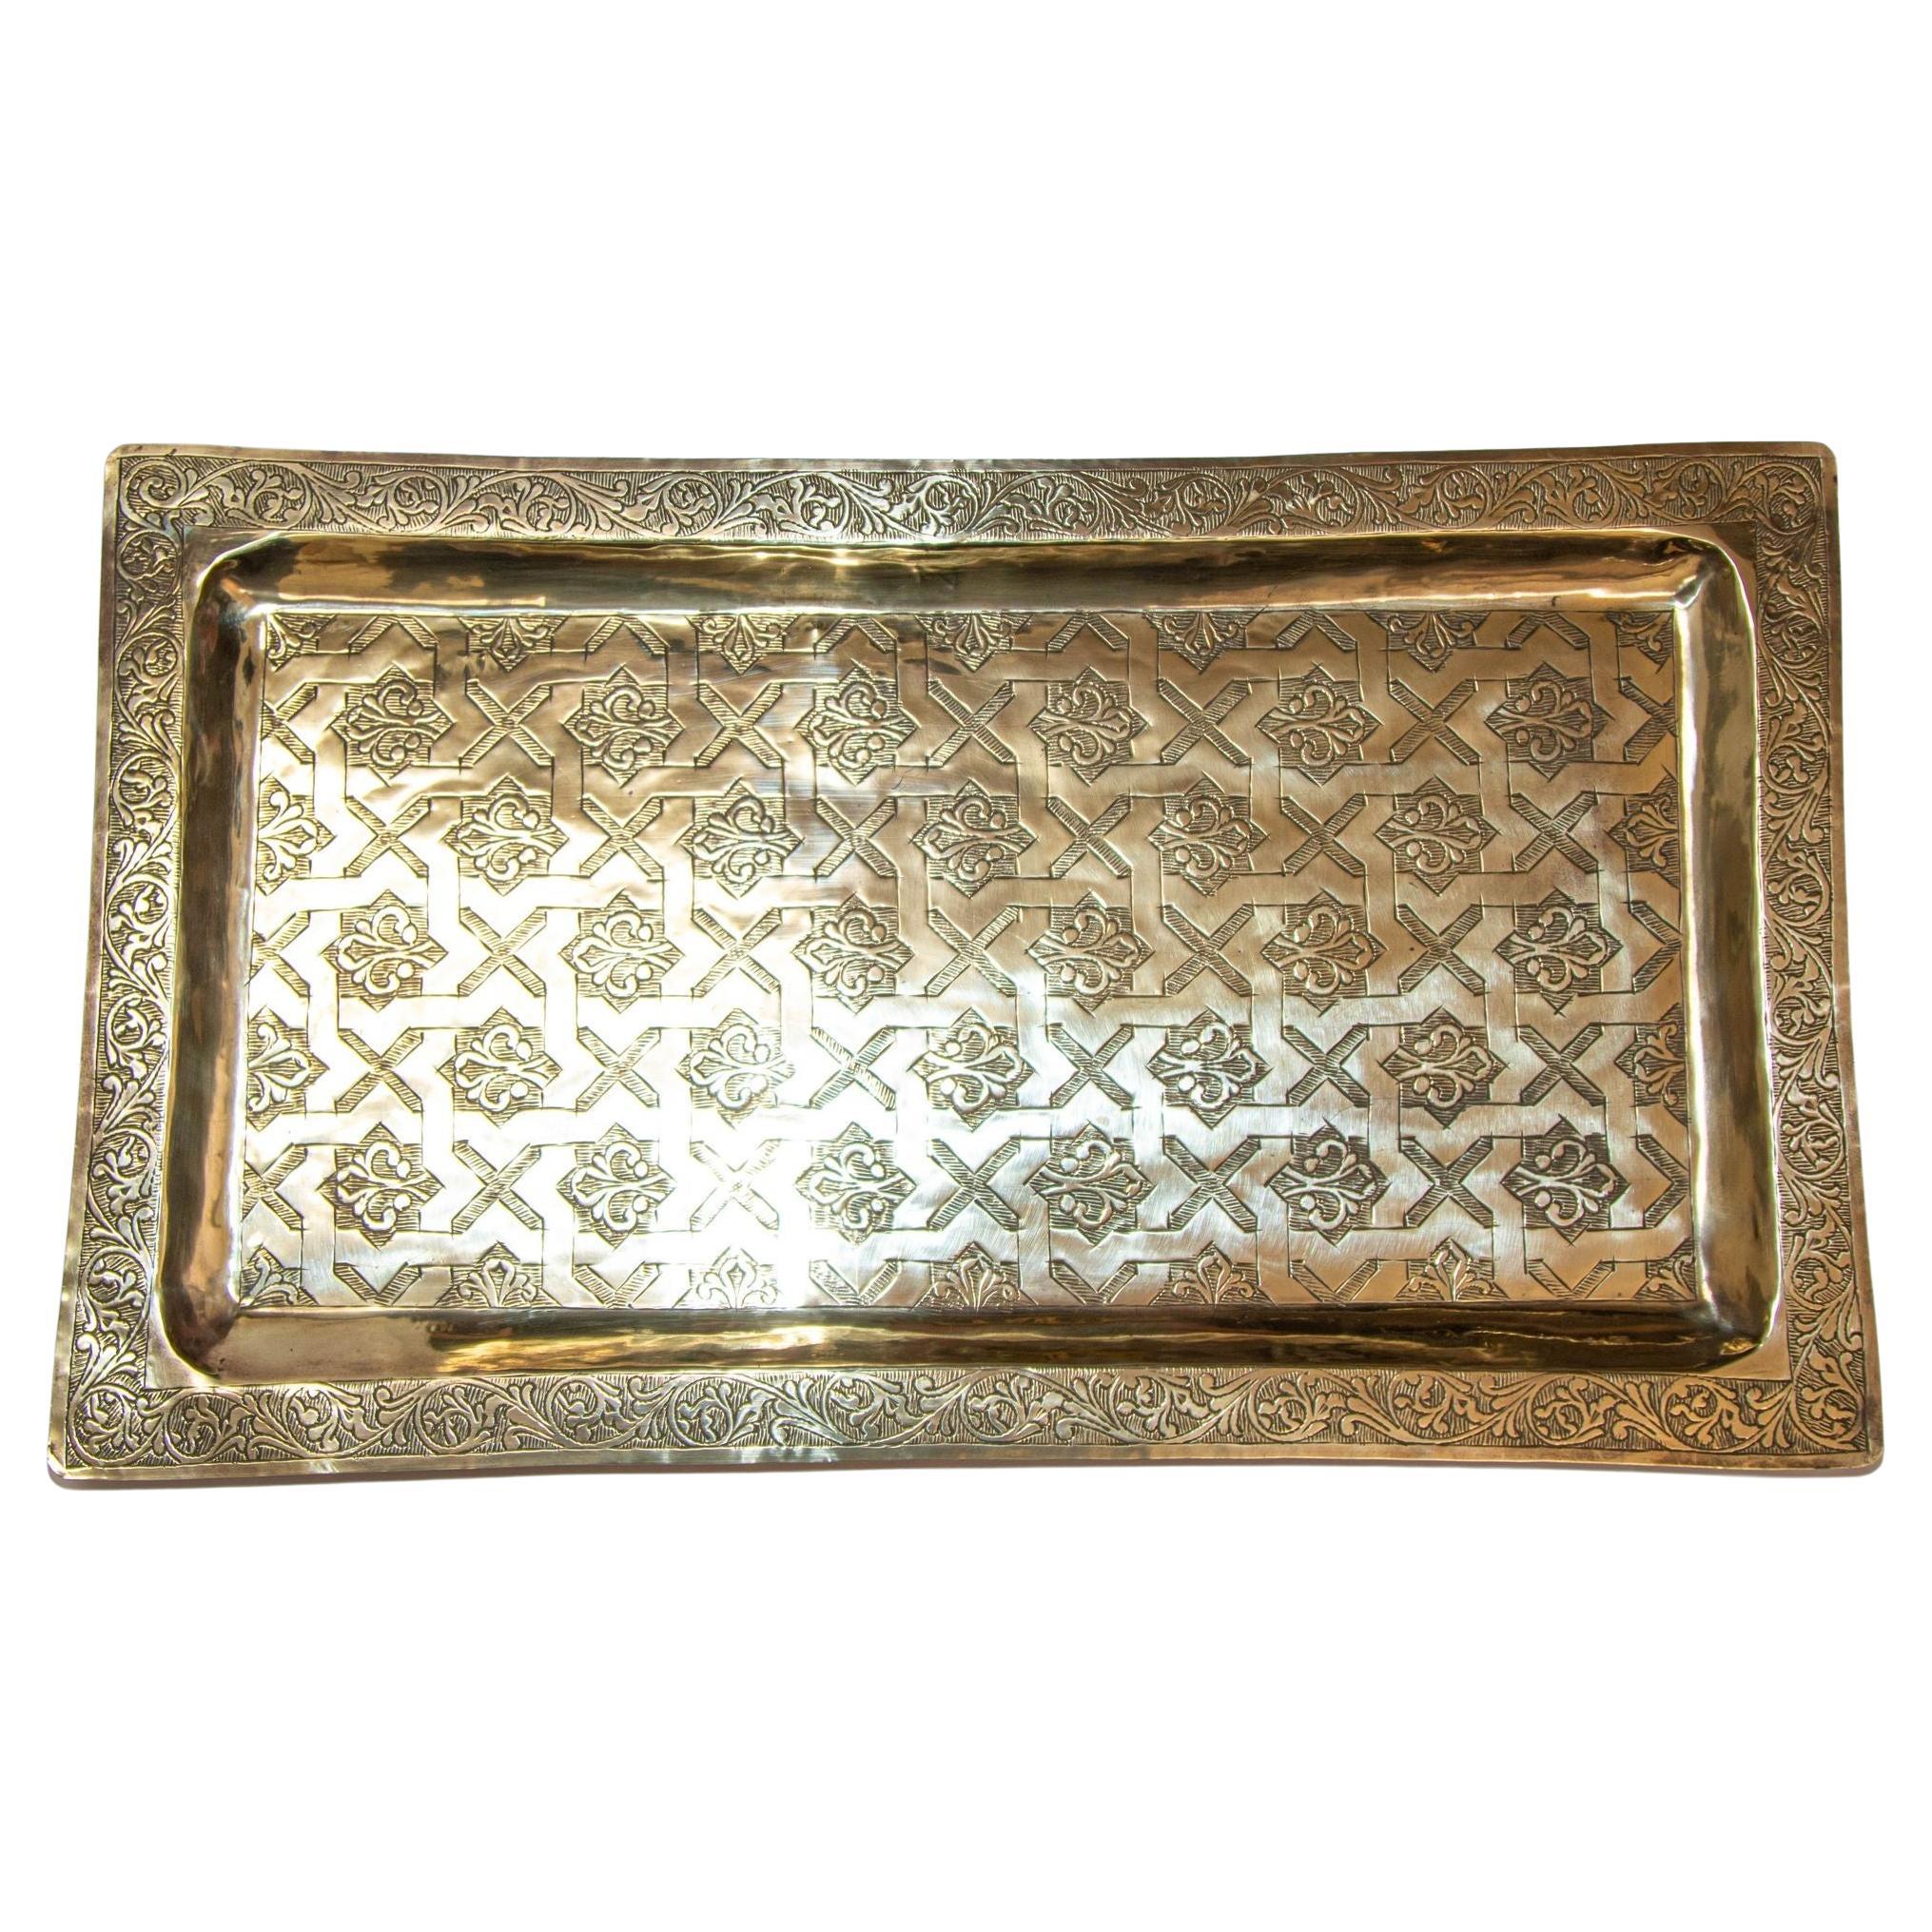 1940er Jahre Marokkanisches Messingtablett Rechteckige Form Poliertes Gold Messing Servierplatte